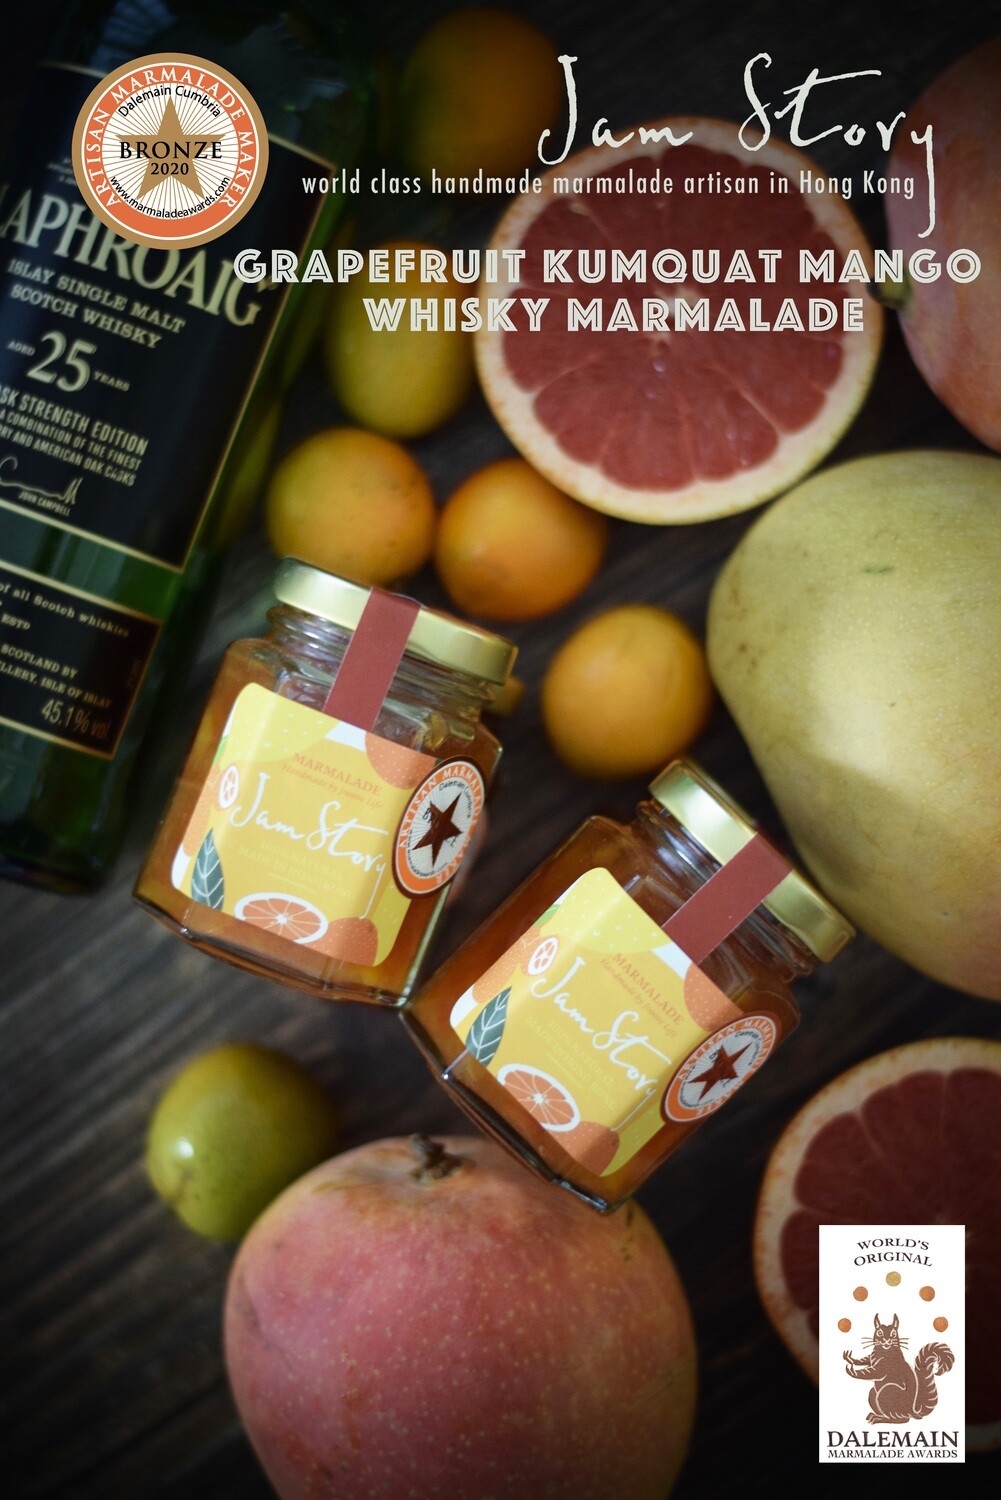 【2020 世界柑橘果醬大賽 - 銅獎果醬】葡萄柚柑桔芒果威士忌果醬 Grapefruit Kumquat Mango Whisky Marmalade